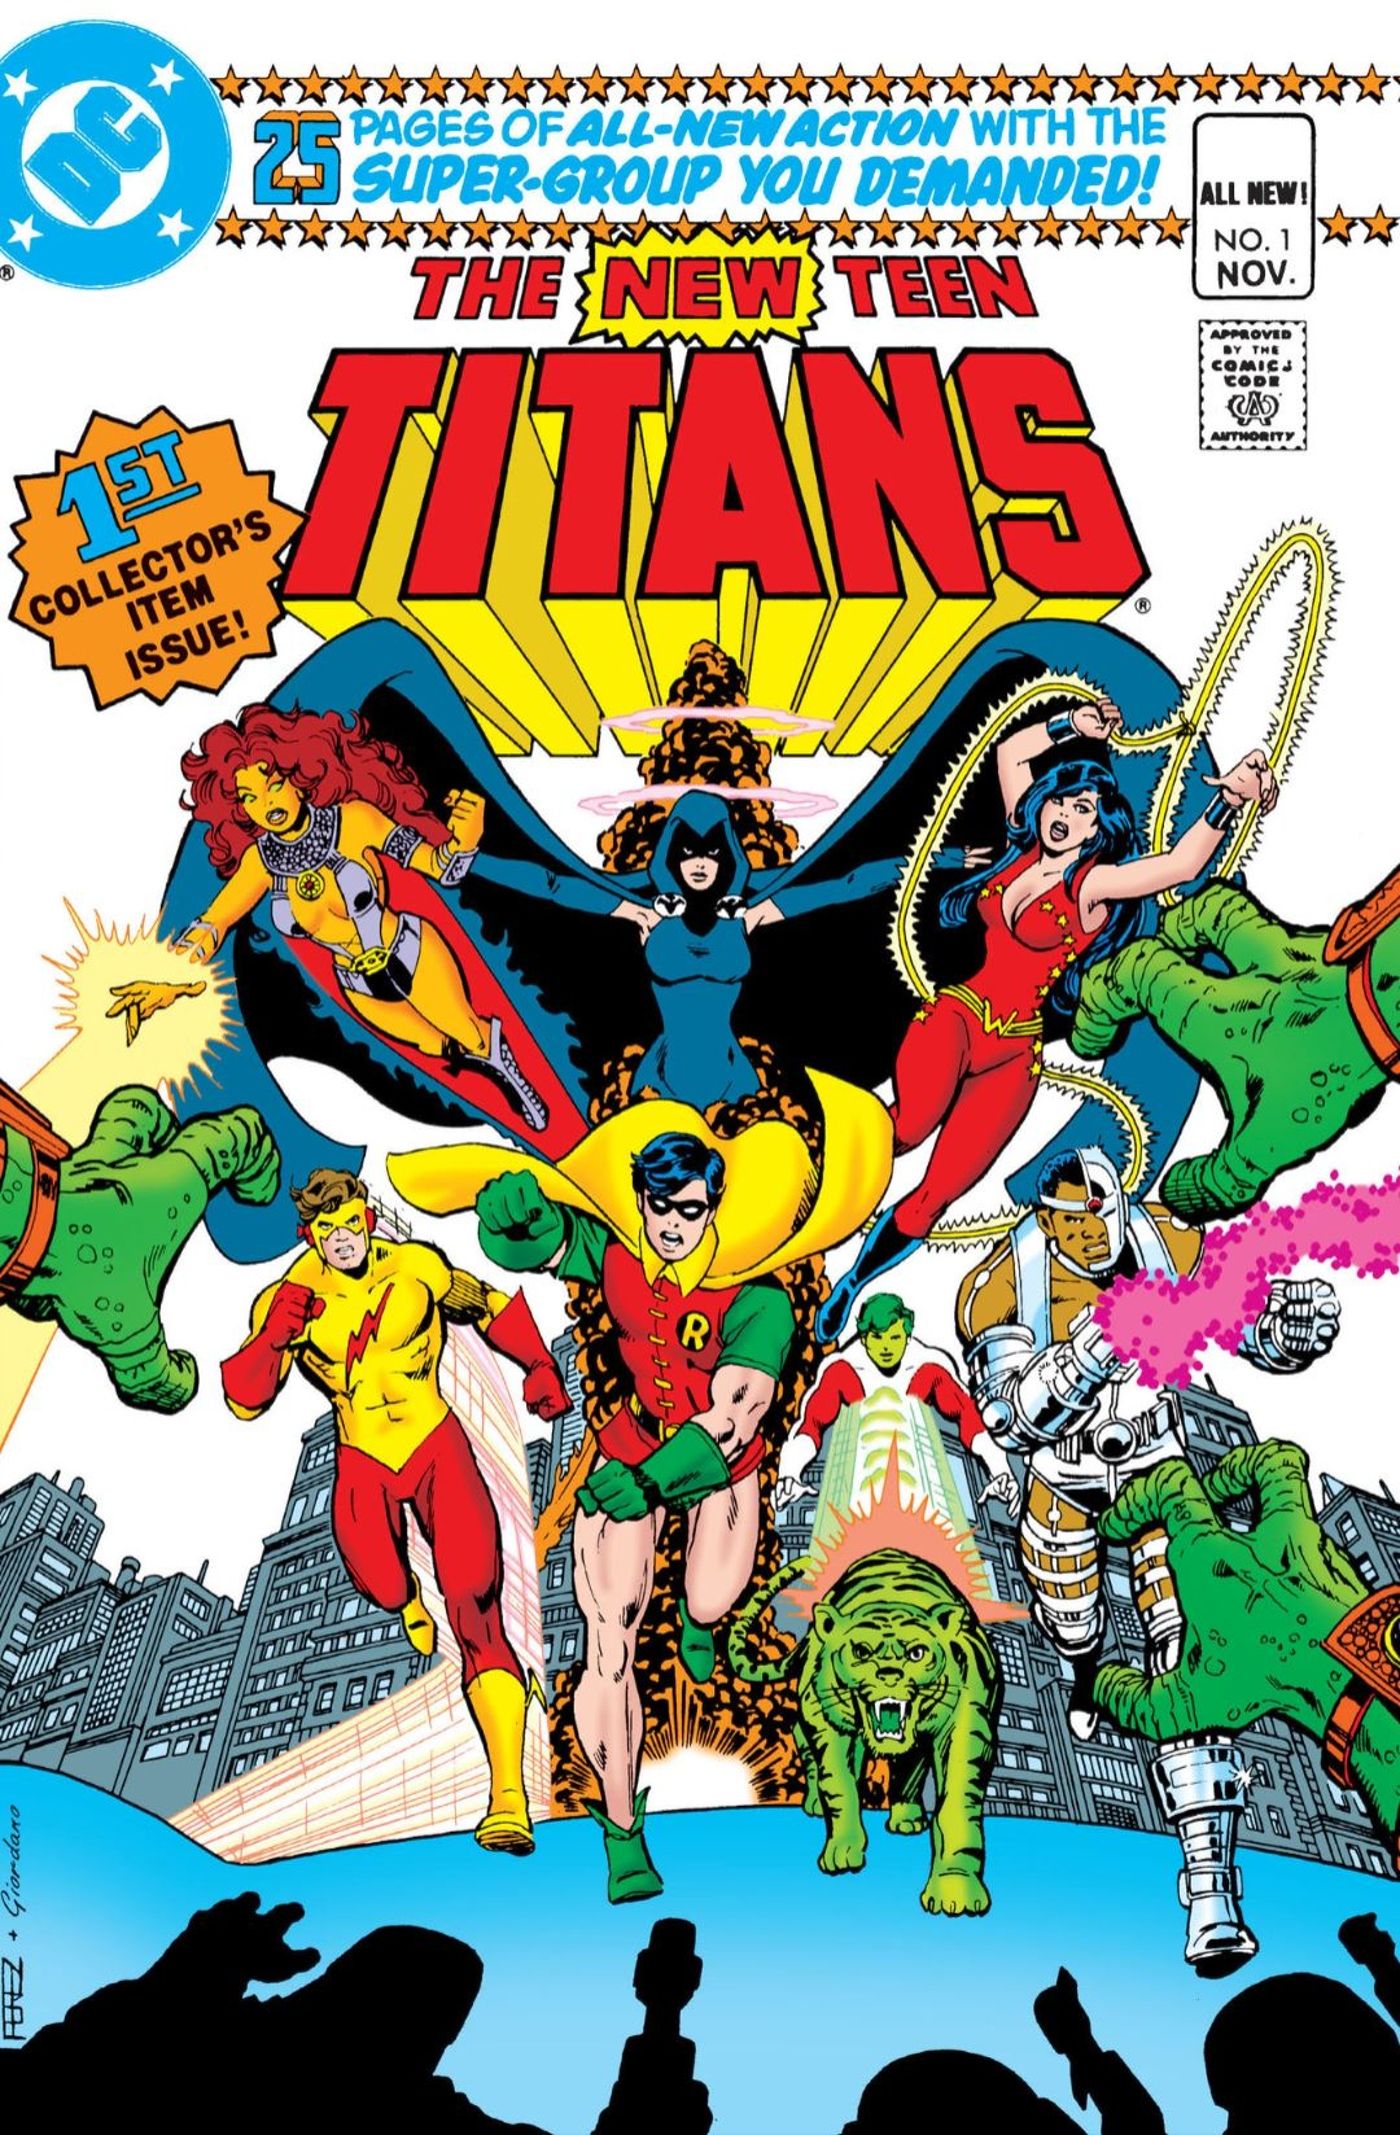 New Teen TItans 1 Cover DC Comics: costumed superheroes run toward the reader.